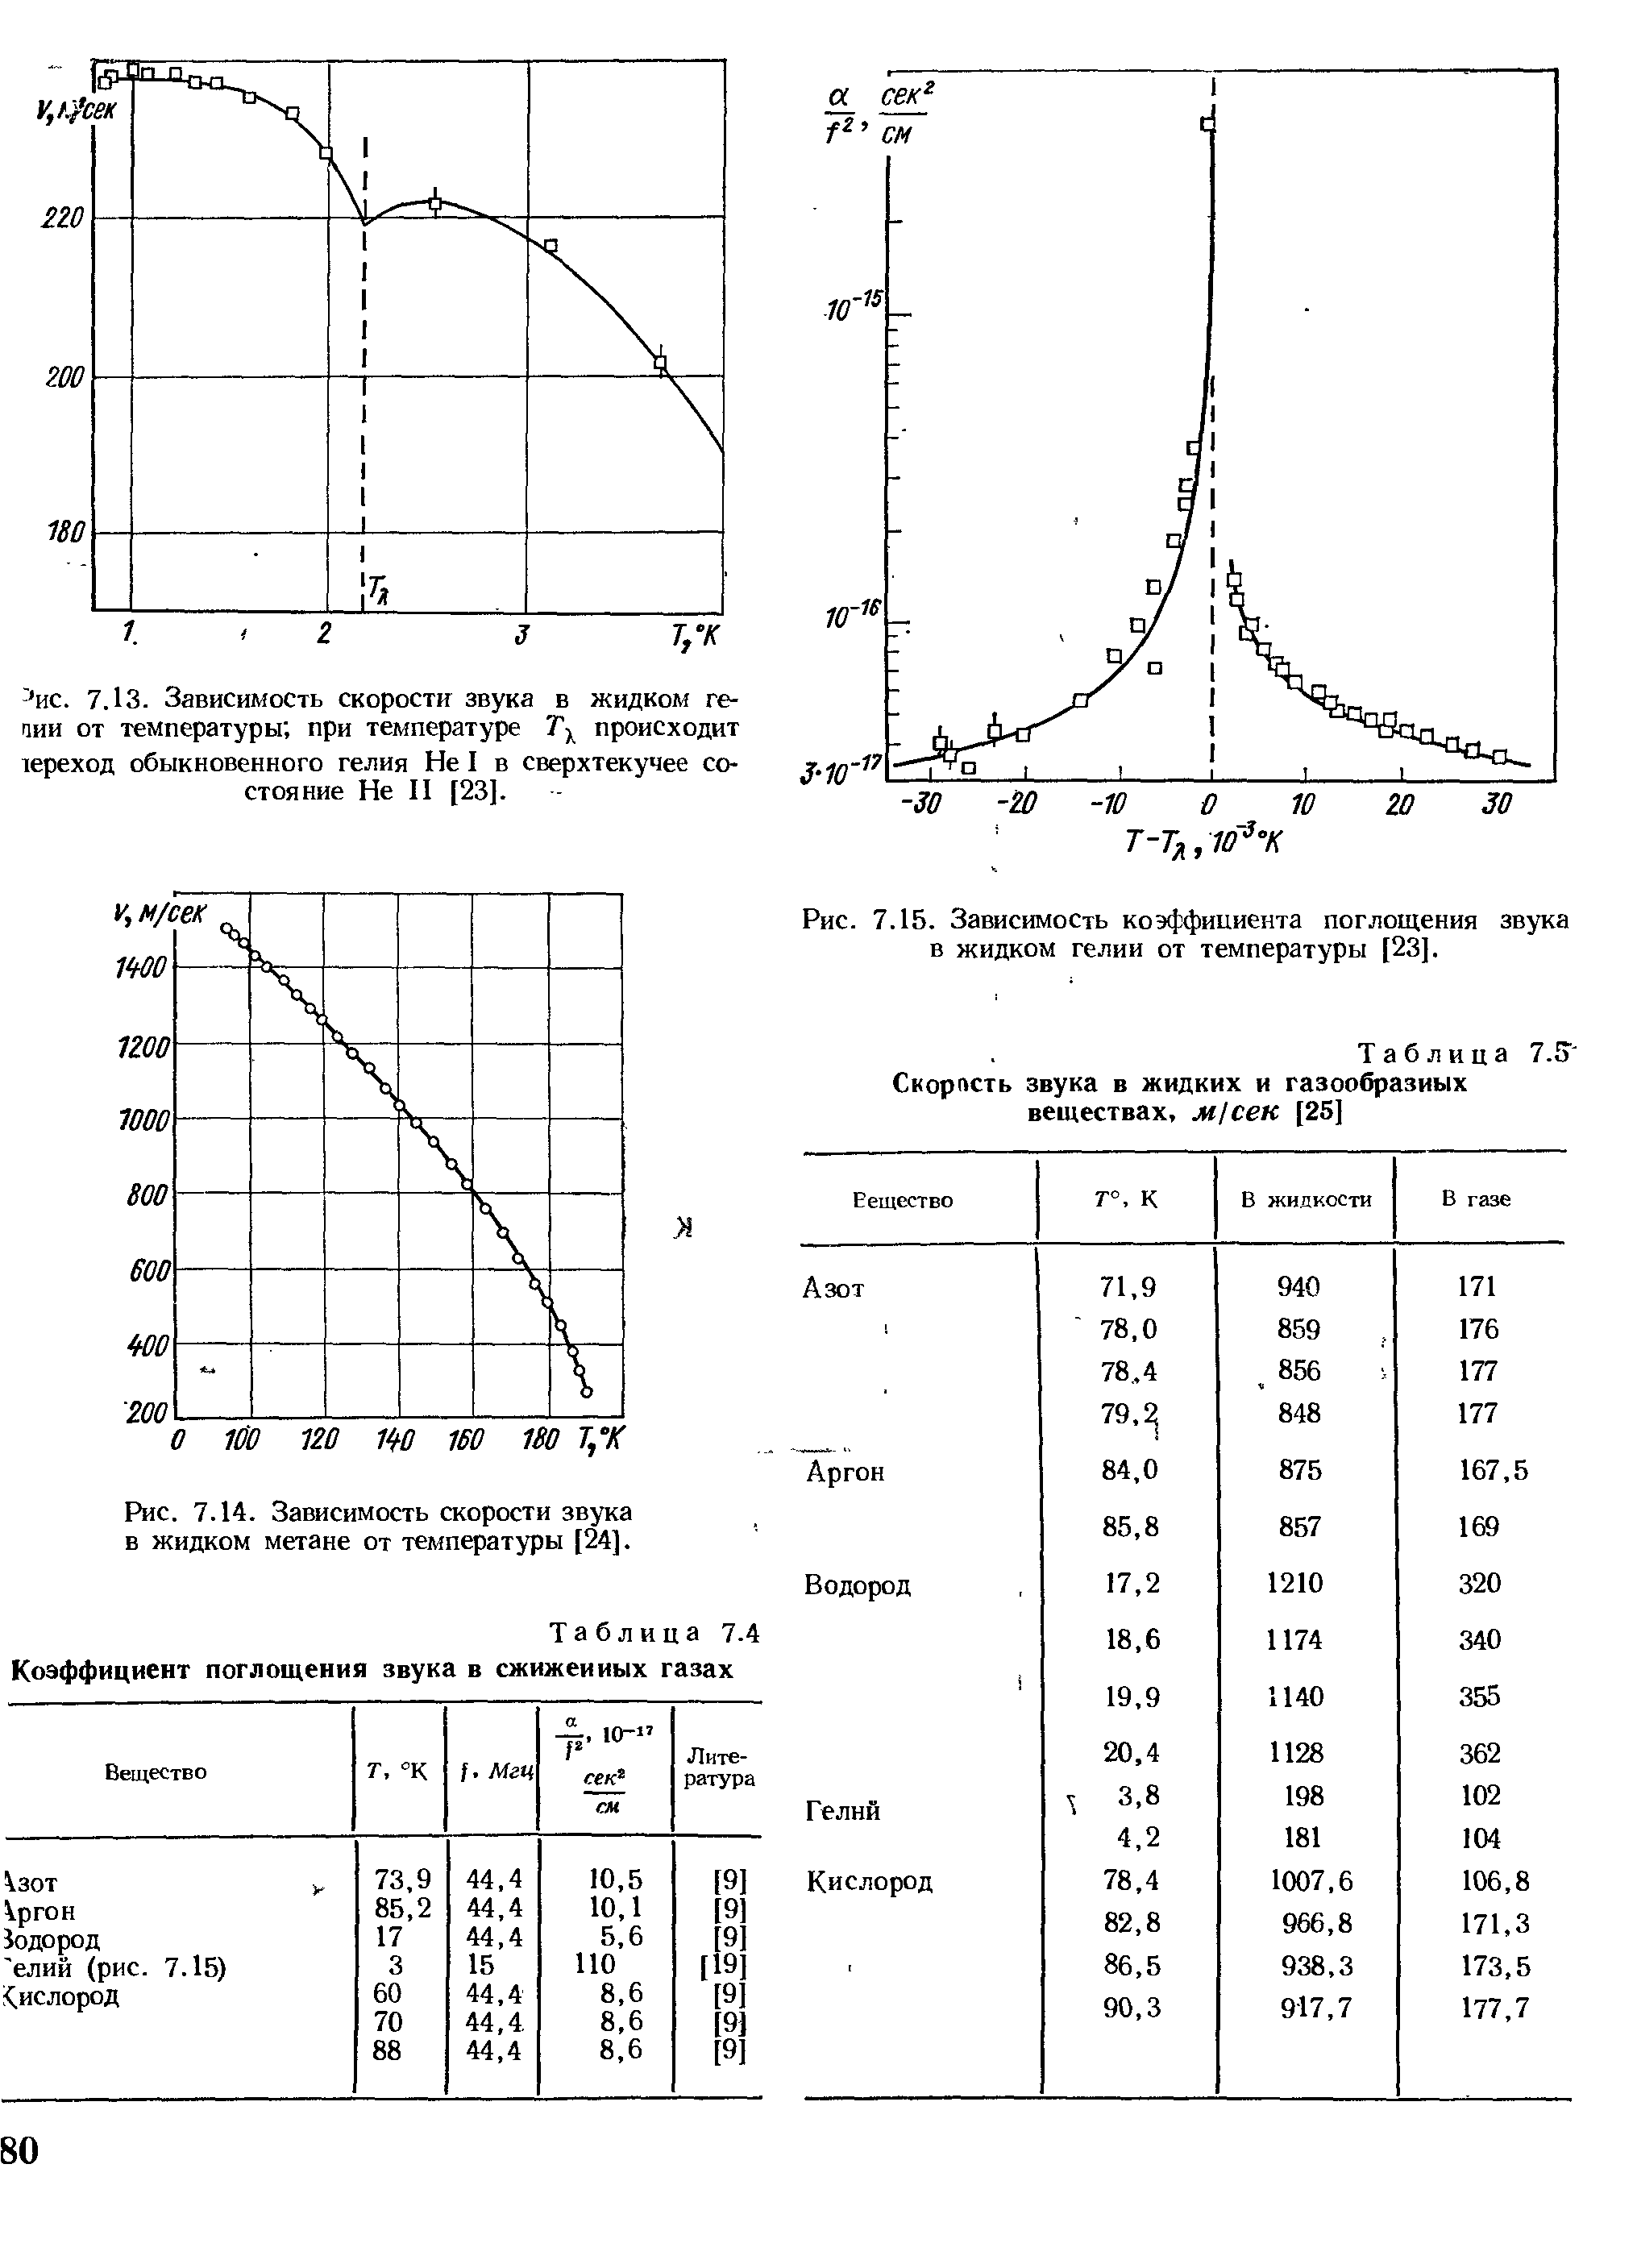 Таблица 7.4 Коэффициент поглощения звука в сжижеииых газах
